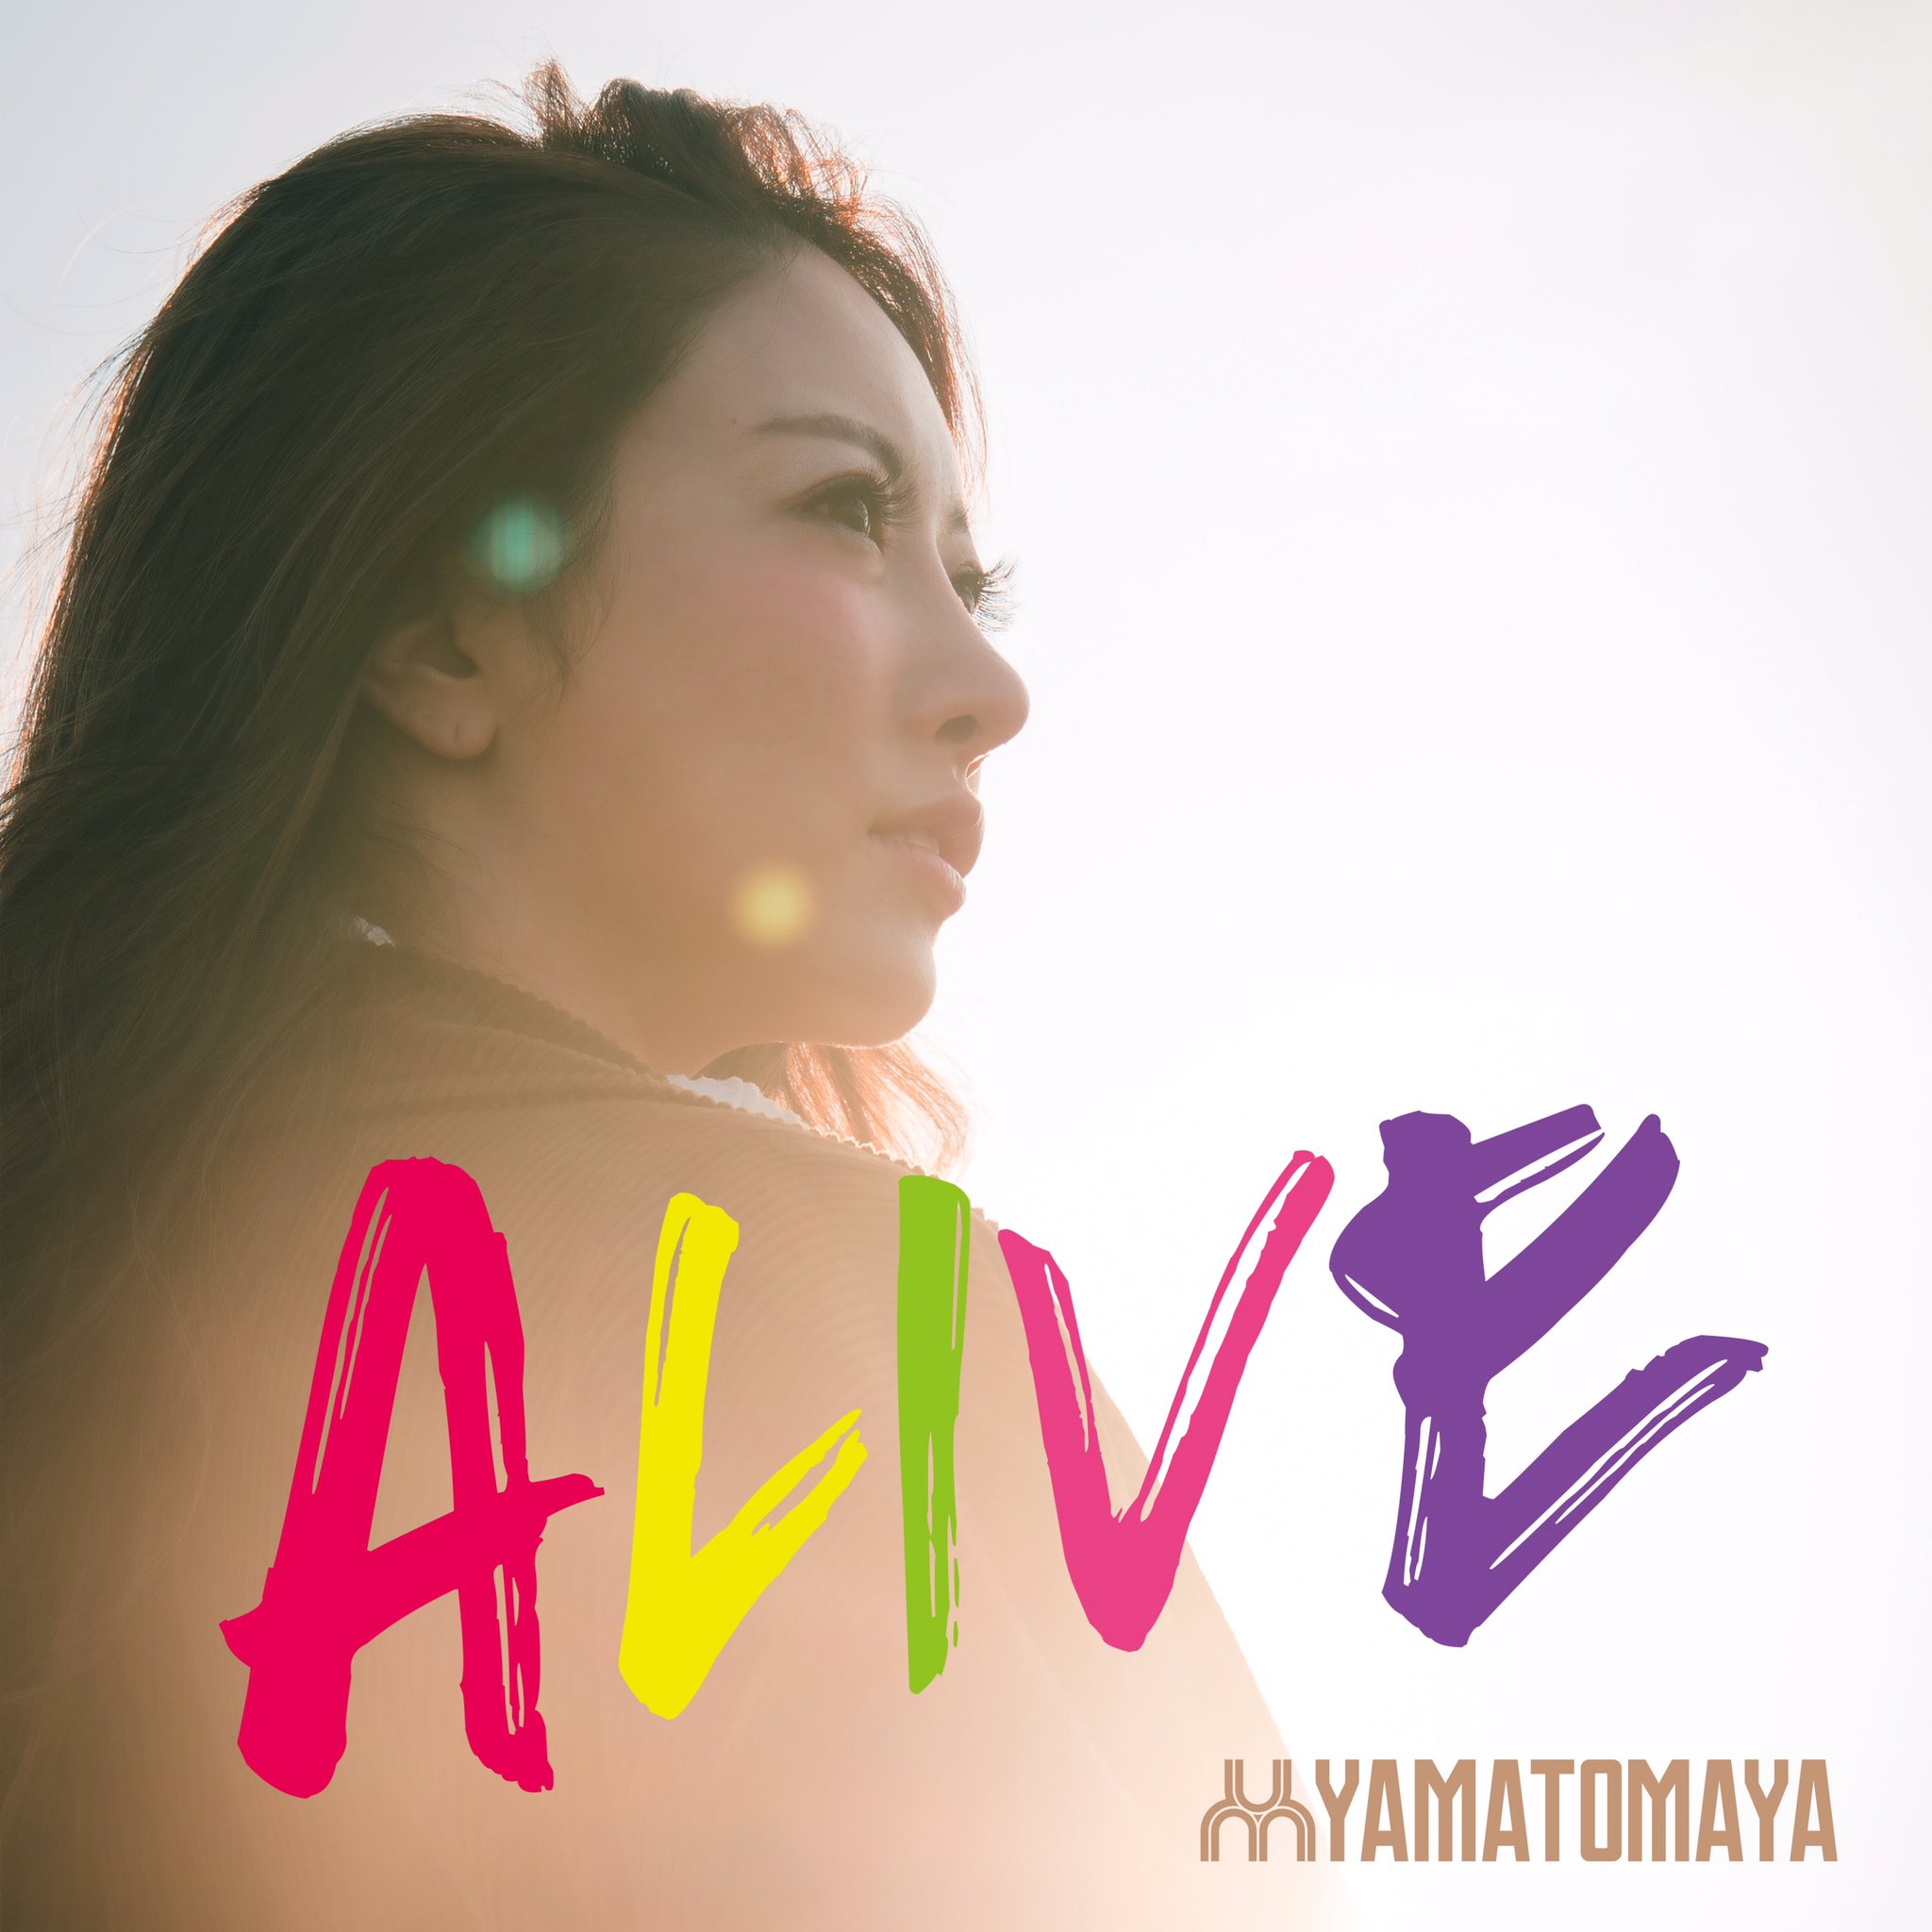 Dj Yamatomayaが初のオリジナル楽曲 Alive をリリース Bmig